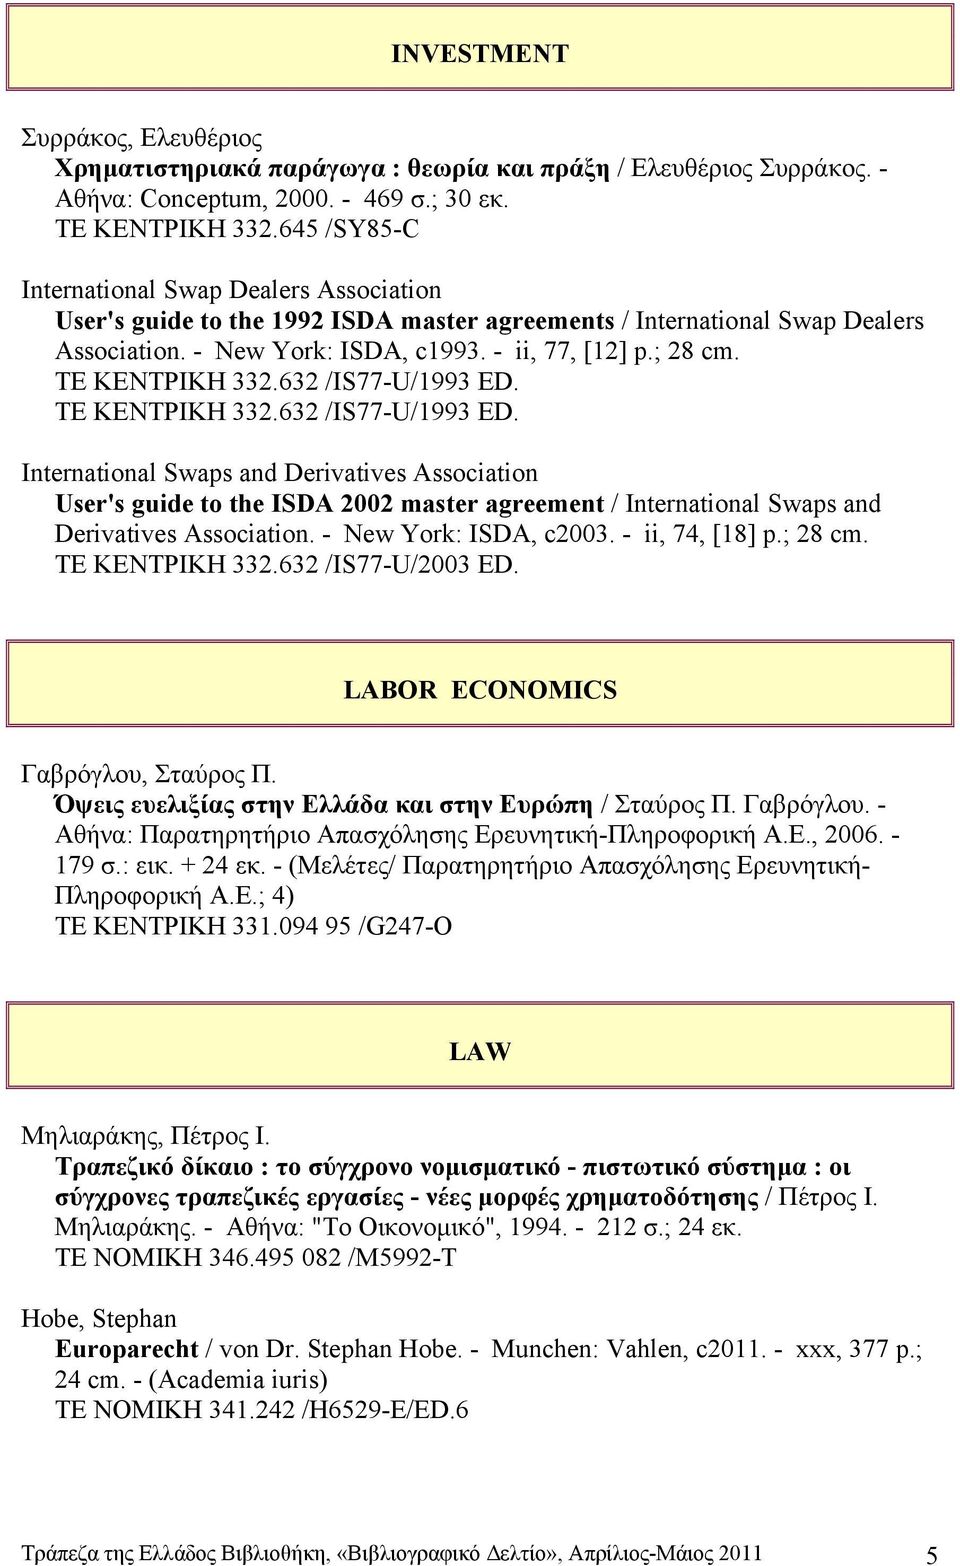 ΤΕ ΚΕΝΤΡΙΚΗ 332.632 /IS77-U/1993 ED. ΤΕ ΚΕΝΤΡΙΚΗ 332.632 /IS77-U/1993 ED. International Swaps and Derivatives Association User's guide to the ISDA 2002 master agreement / International Swaps and Derivatives Association.